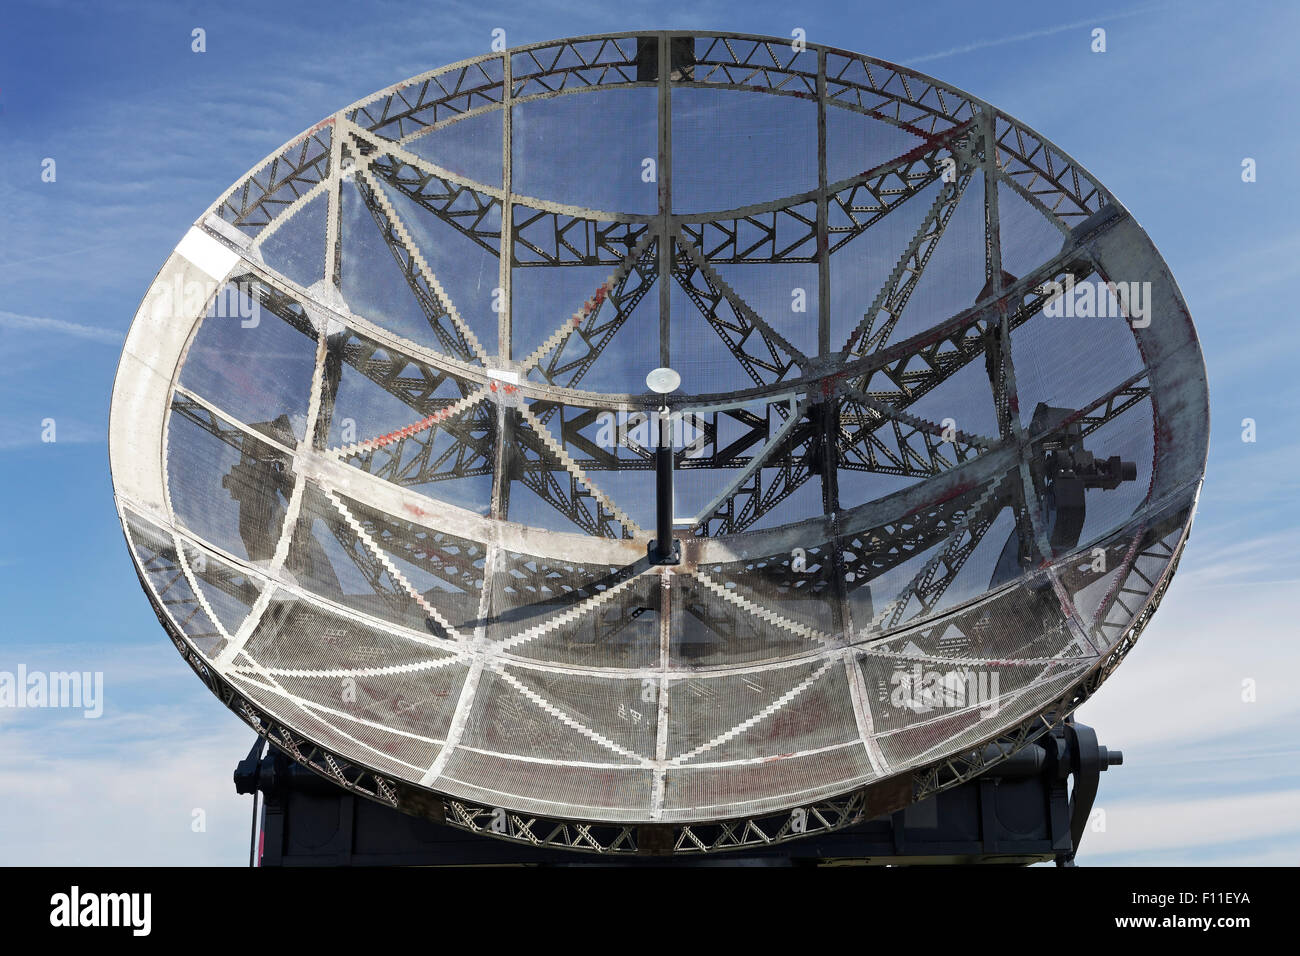 Antenne parabolique de la 2e guerre mondiale, nom de code Anzanole Riese, ou Raversyde Raversijde, Oostende, Flandre occidentale, Belgique Banque D'Images